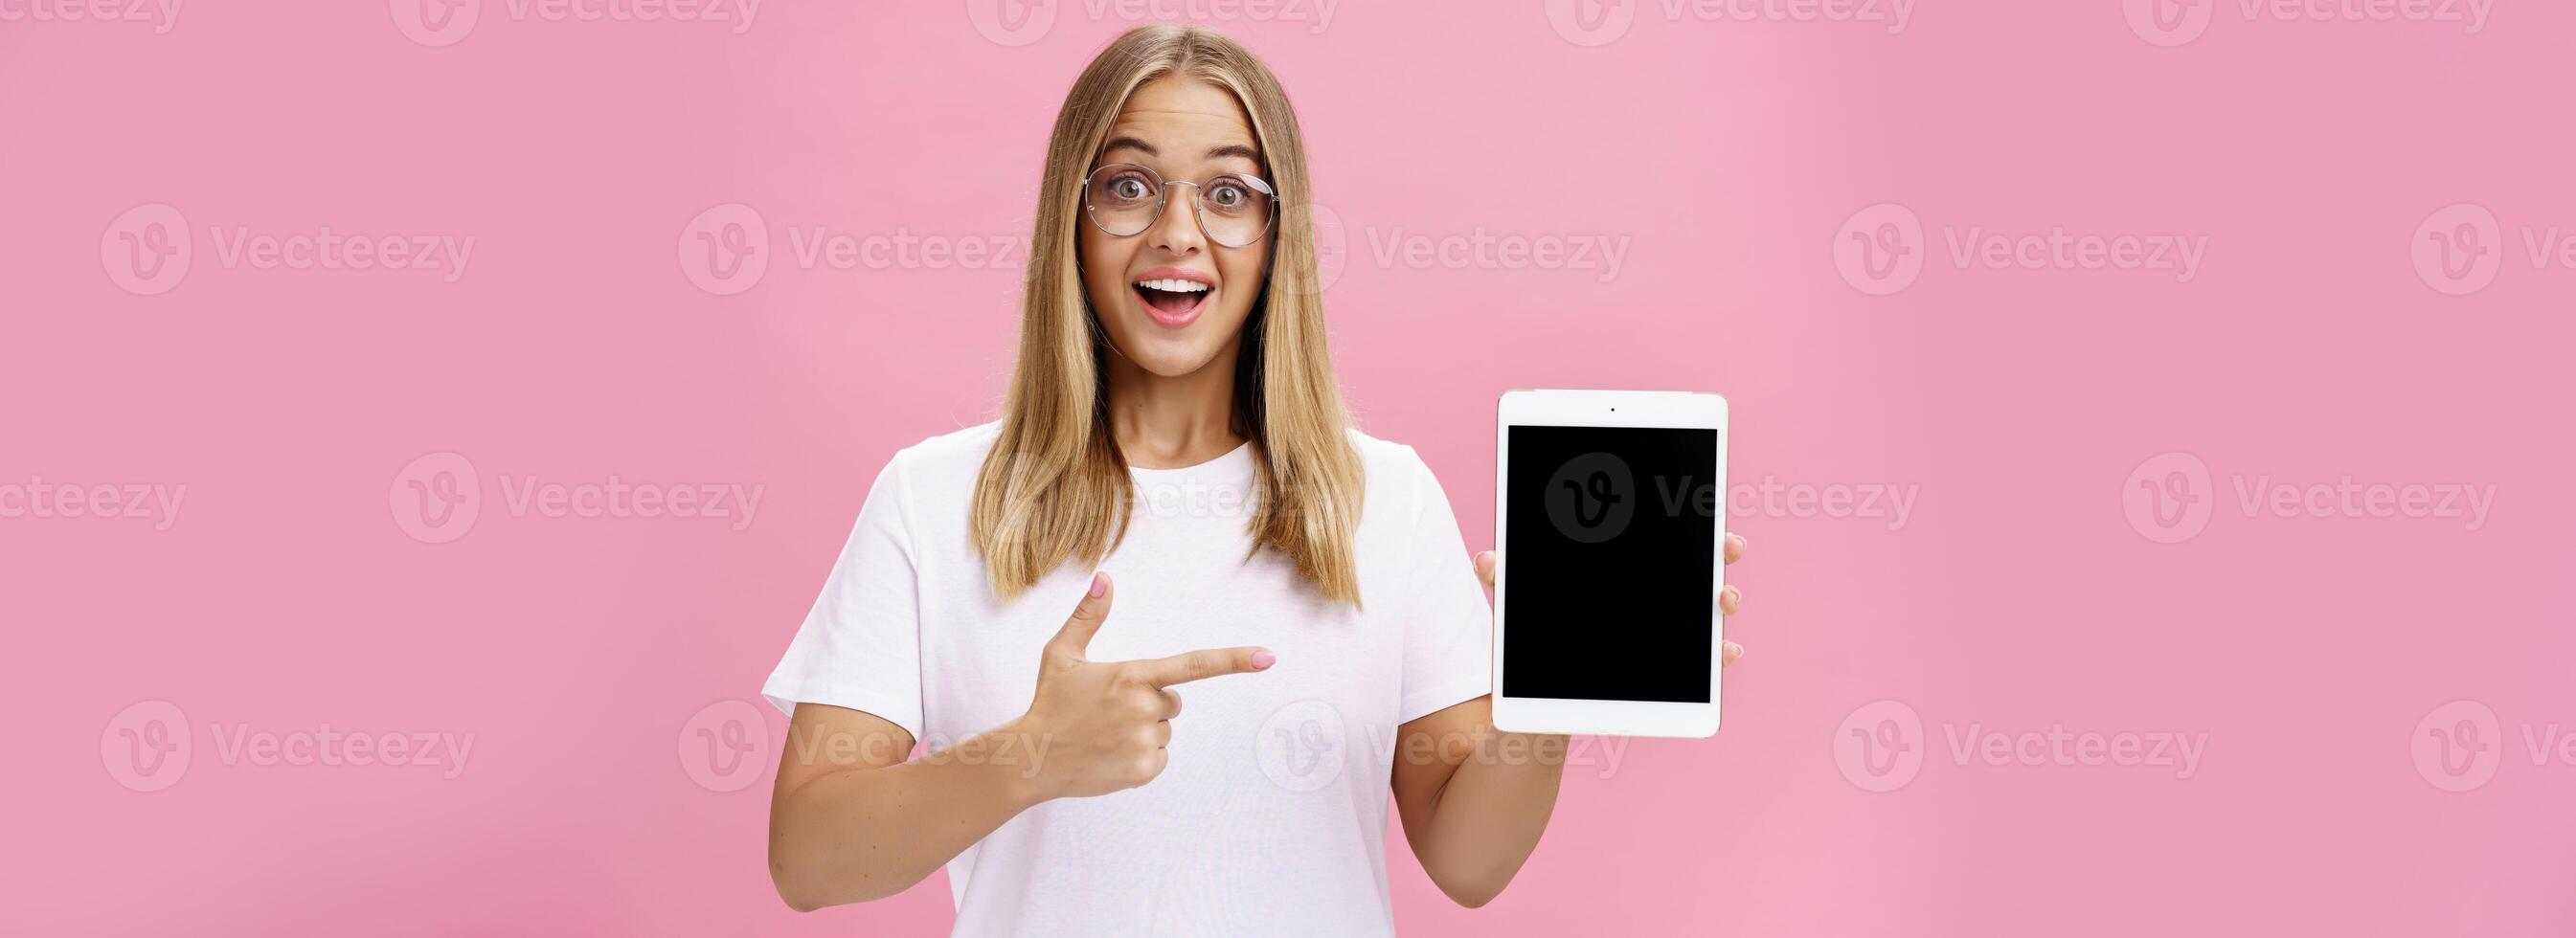 flicka föreslår köpa digital läsplatta för universitet och glömma papper böcker. upphetsad Lycklig och förtjust ung kvinna studerande i vit t-shirt och glasögon pekande på enhet skärm rekommenderar grej foto